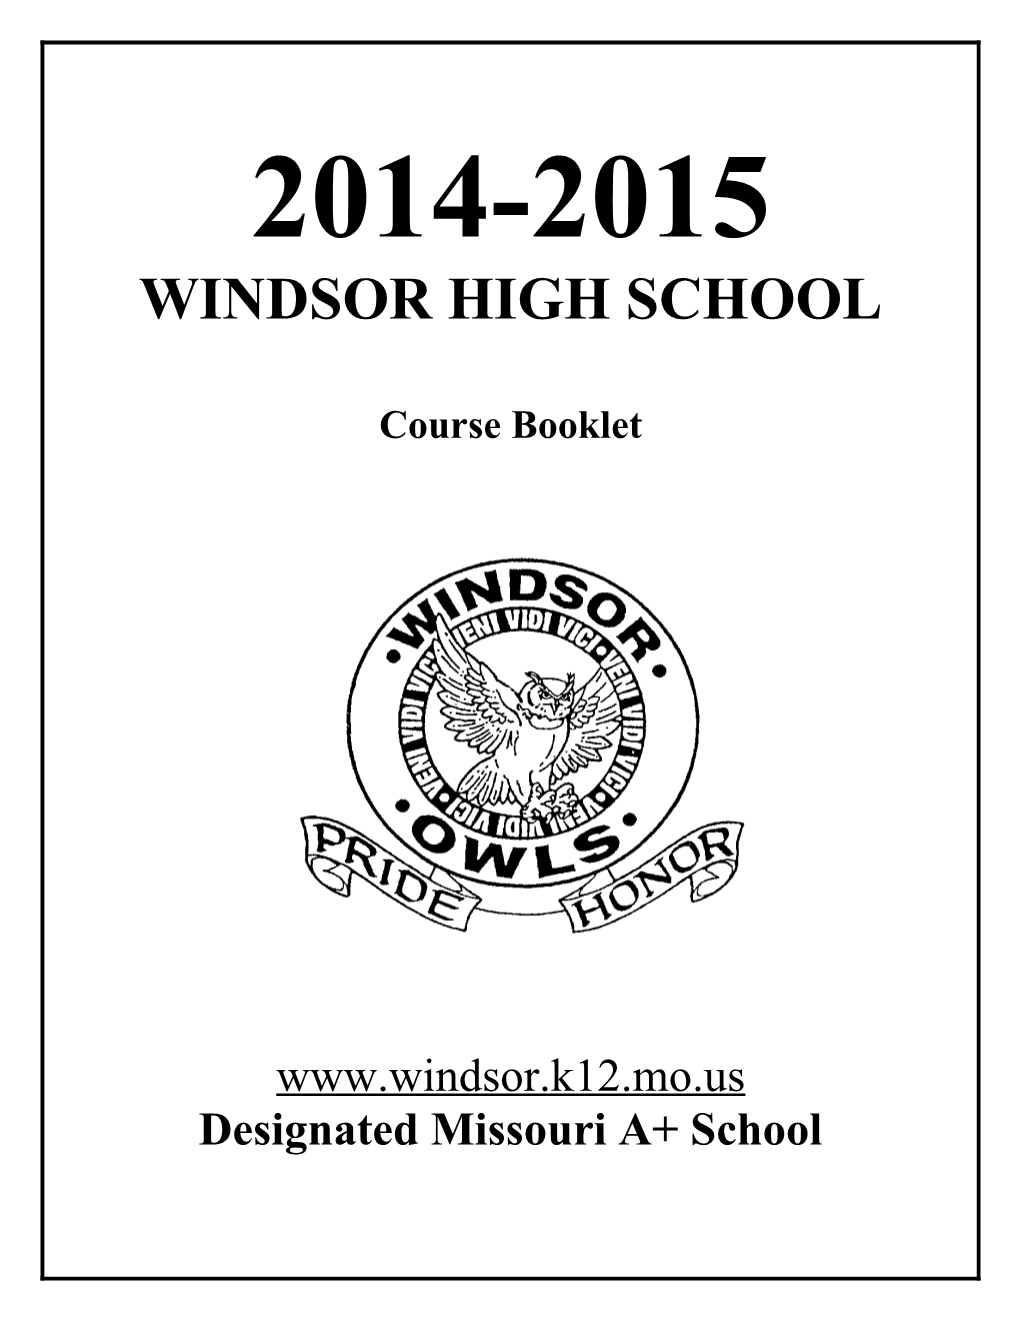 Windsor High School